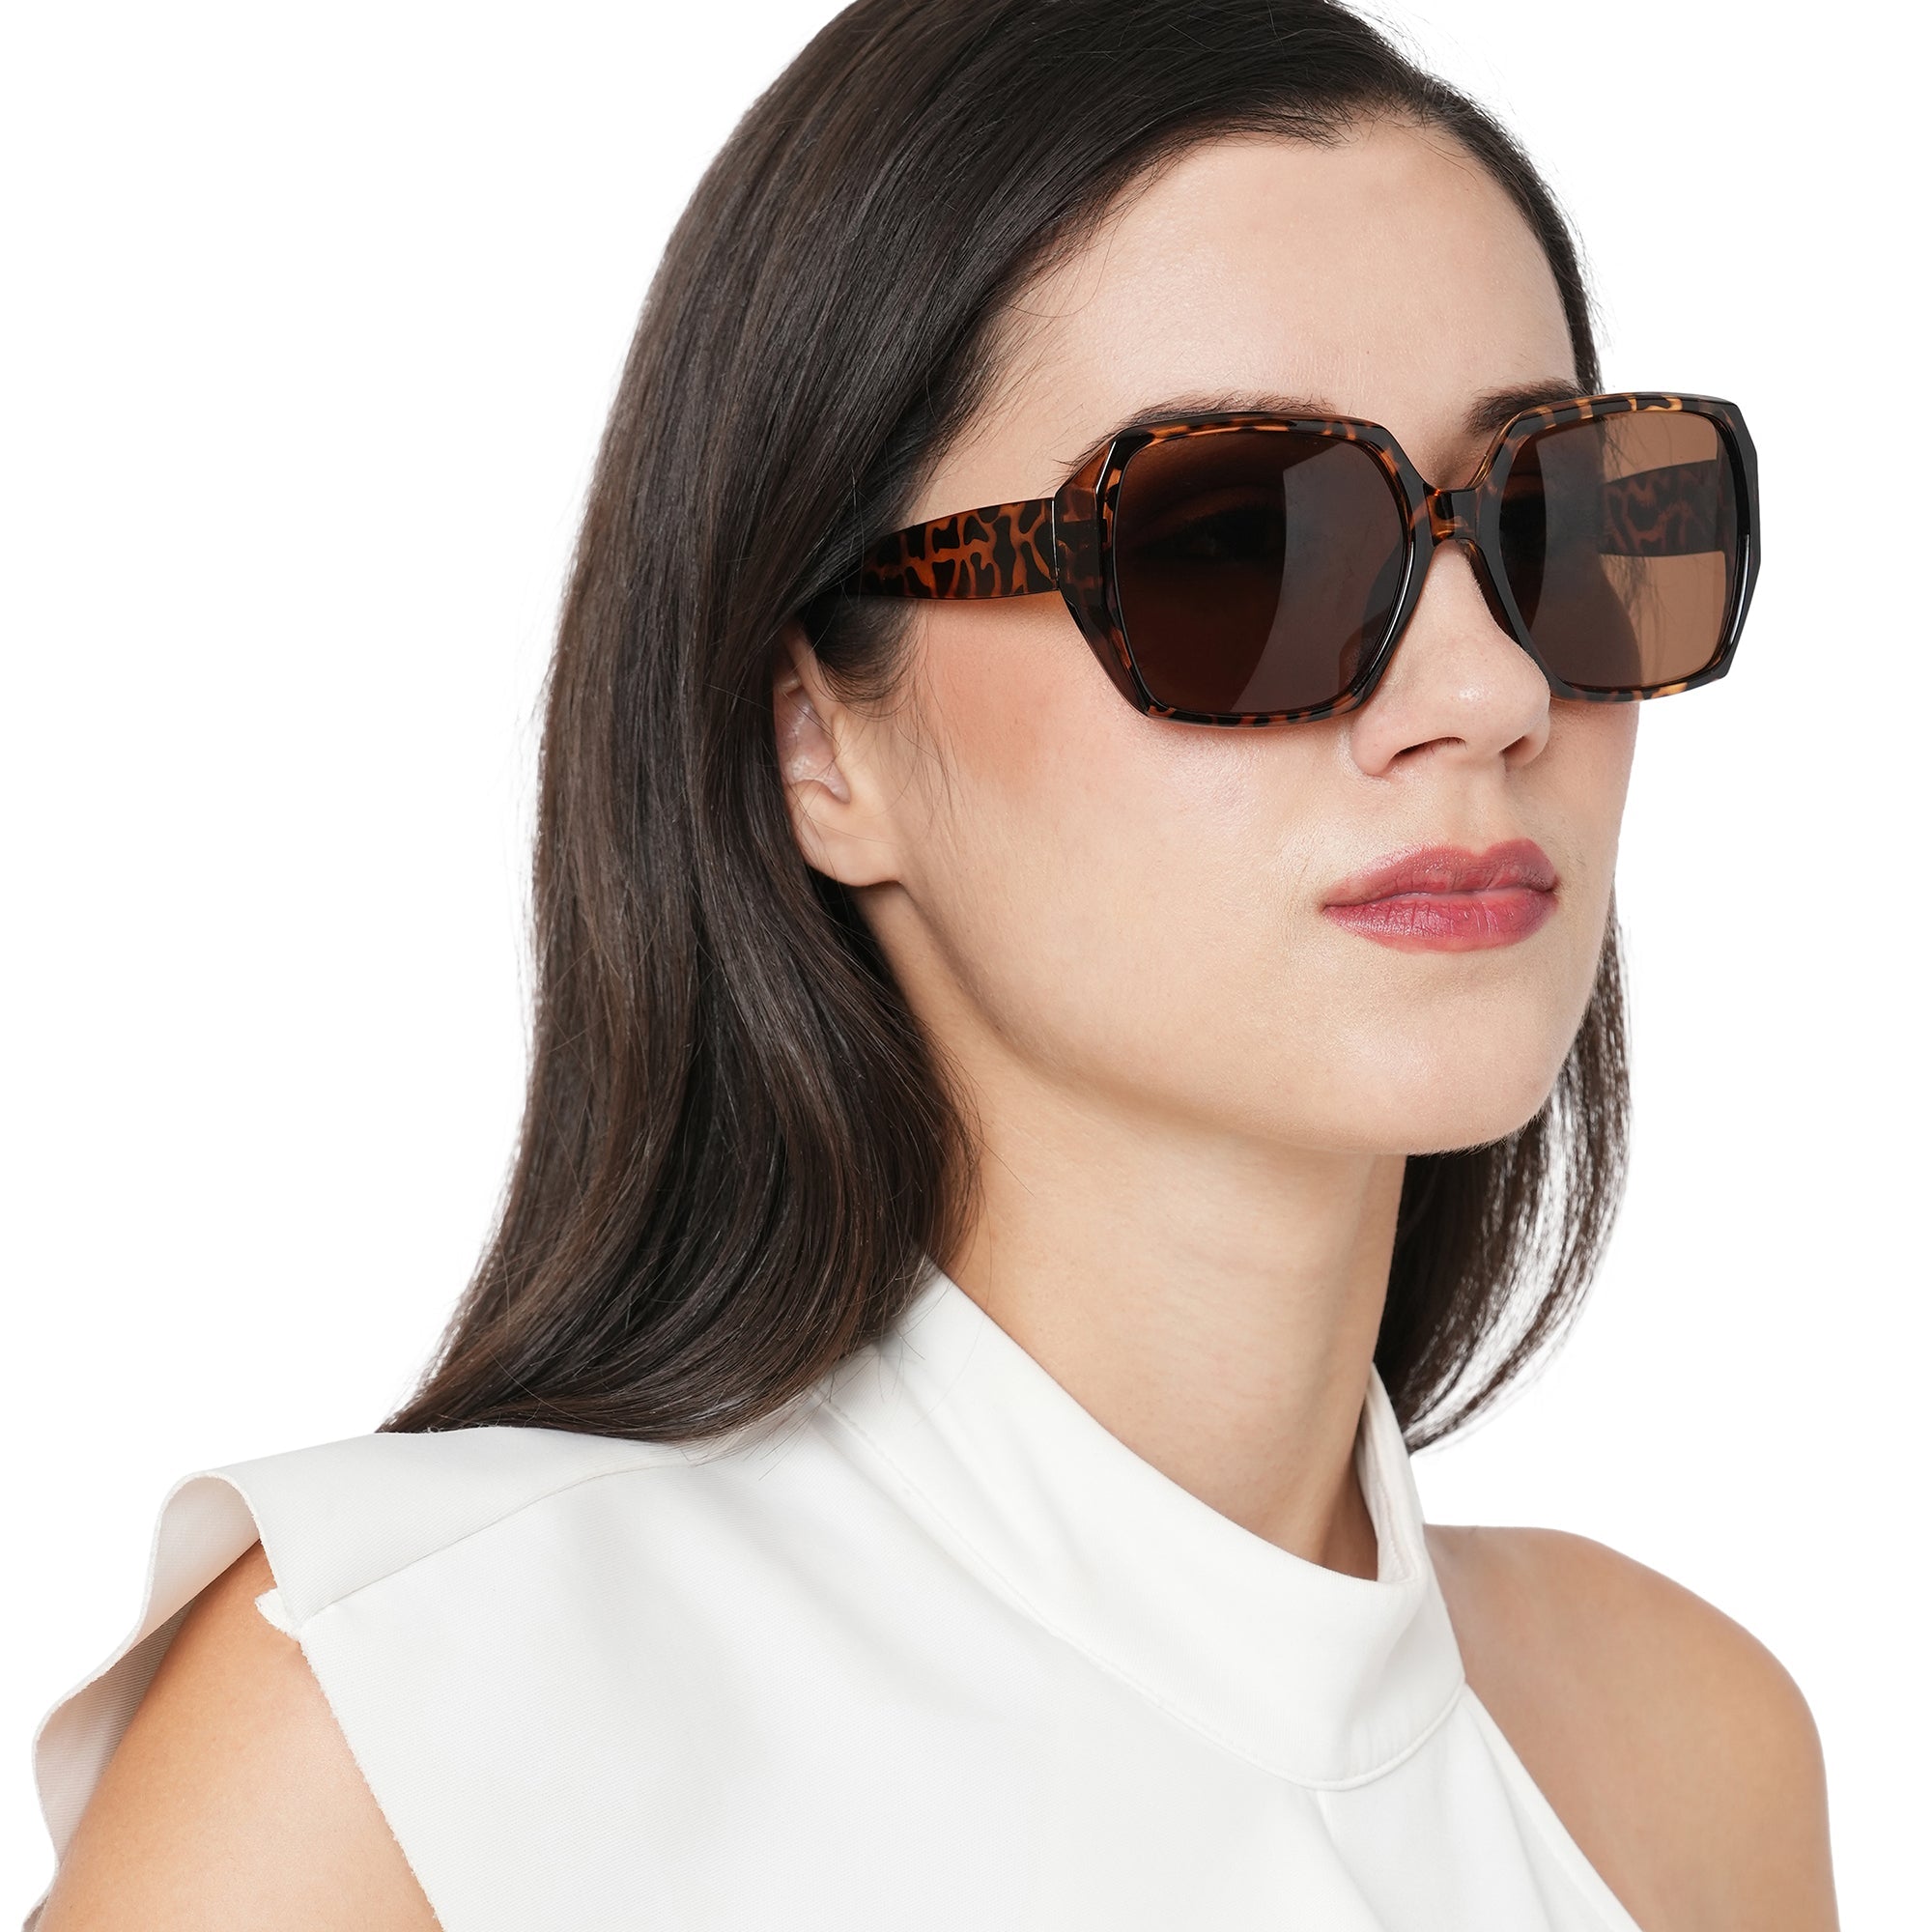 Buy Sunglasses, Eyeglasses, Contact Lens, Reading Glasses Online | Eyesdeal  | Best Eyewear Store in India